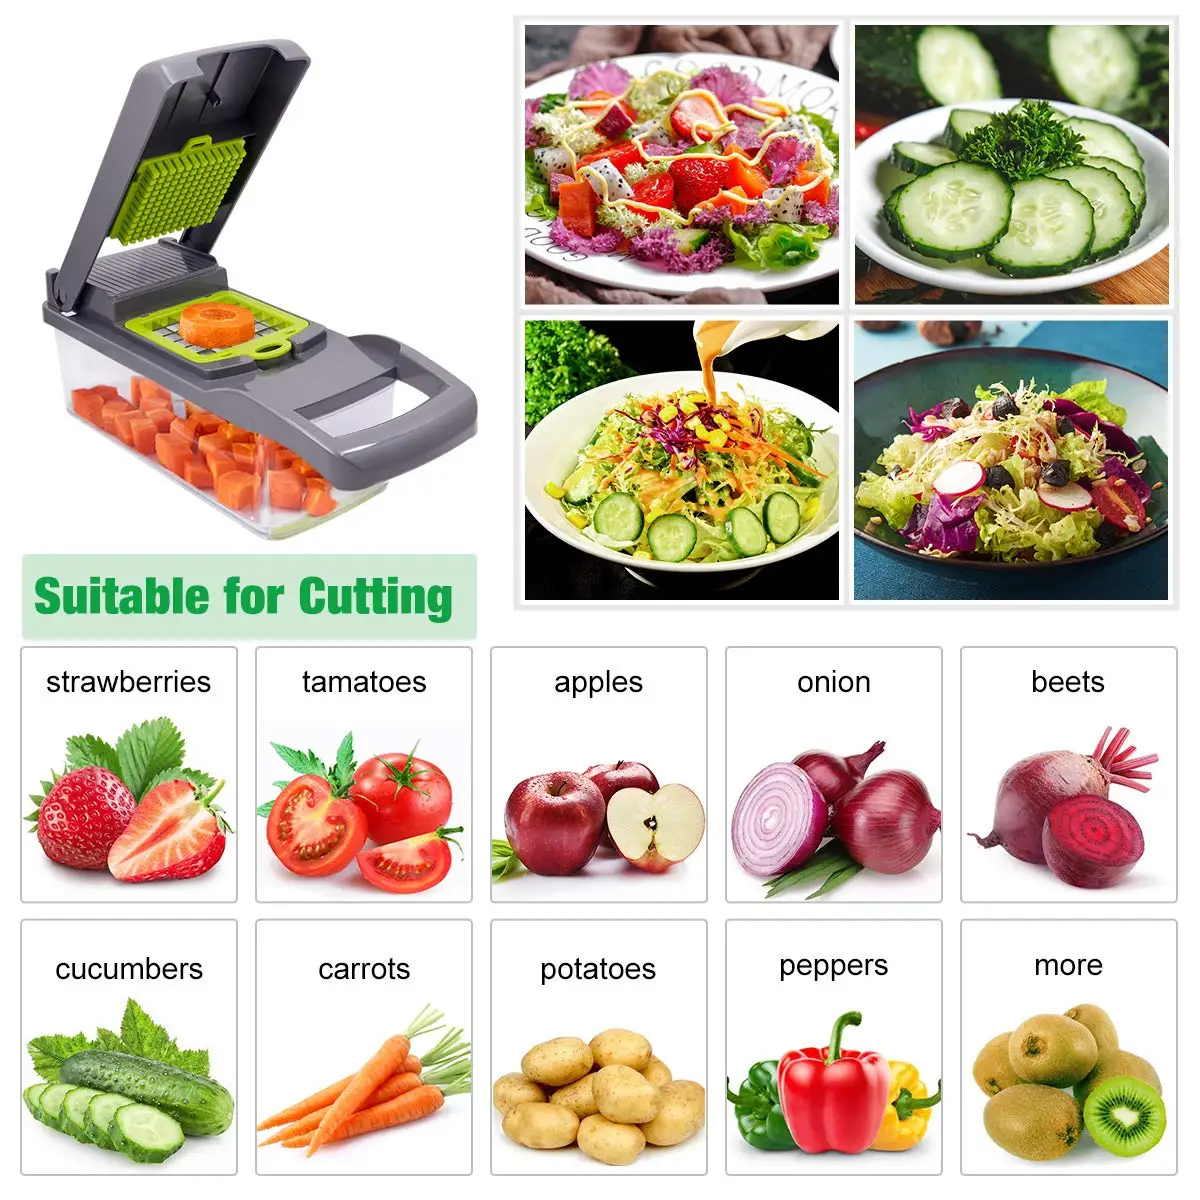 

Овощерезка, устройство для очистки картофеля и фруктов, корзина для моркови, терка для овощей, кухонные аксессуары